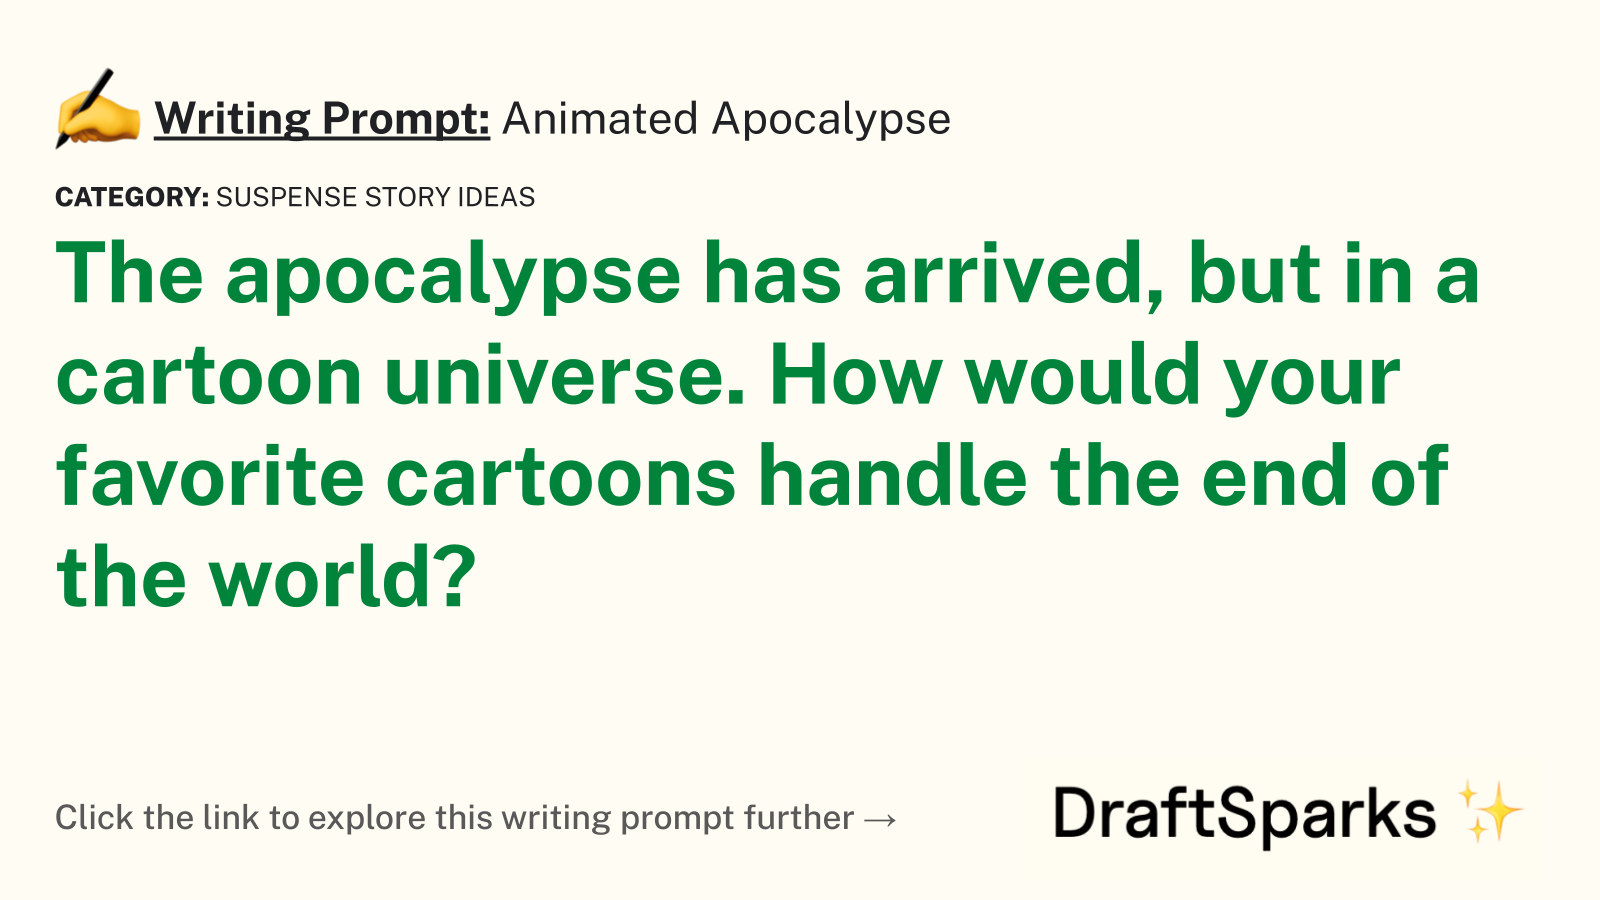 Animated Apocalypse